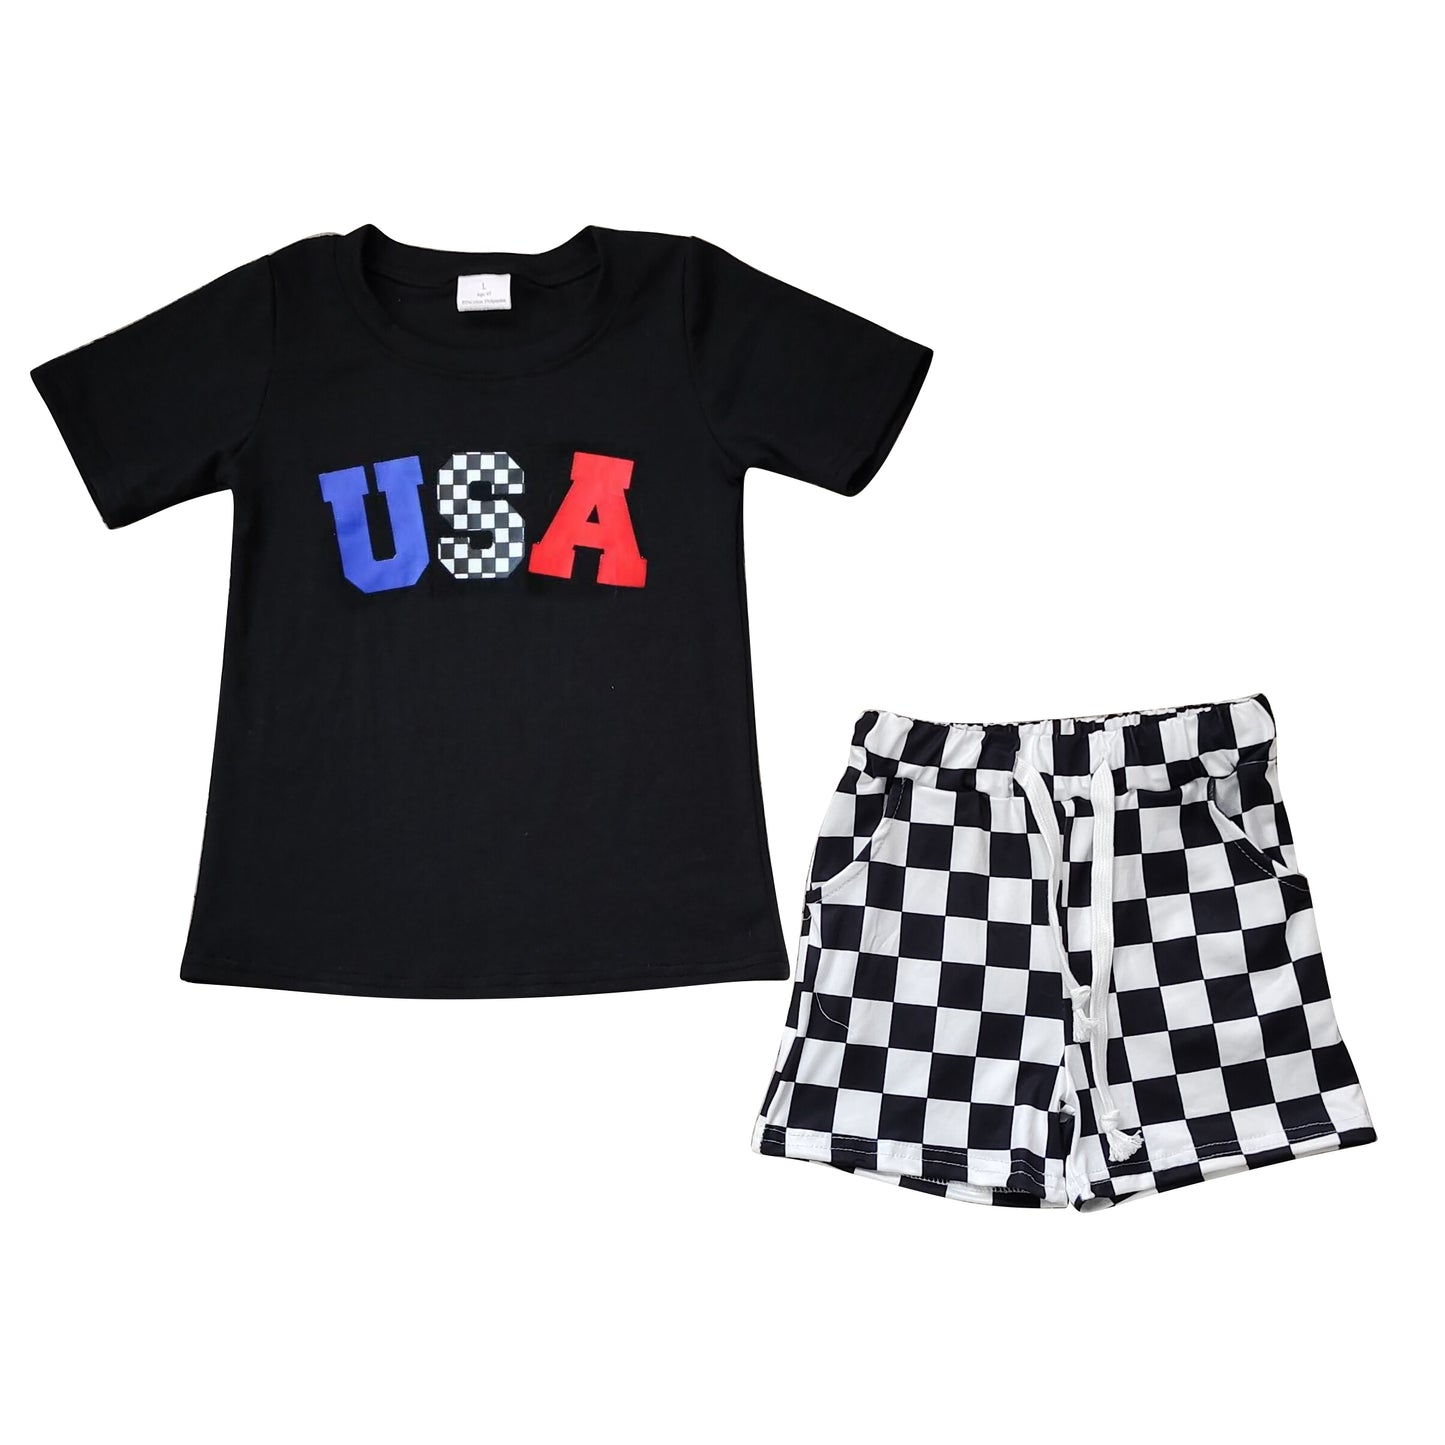 Baby Boys Black USA Short Sleeve Shirts Tops Black Checkered Shorts Clothes Sets Preorder